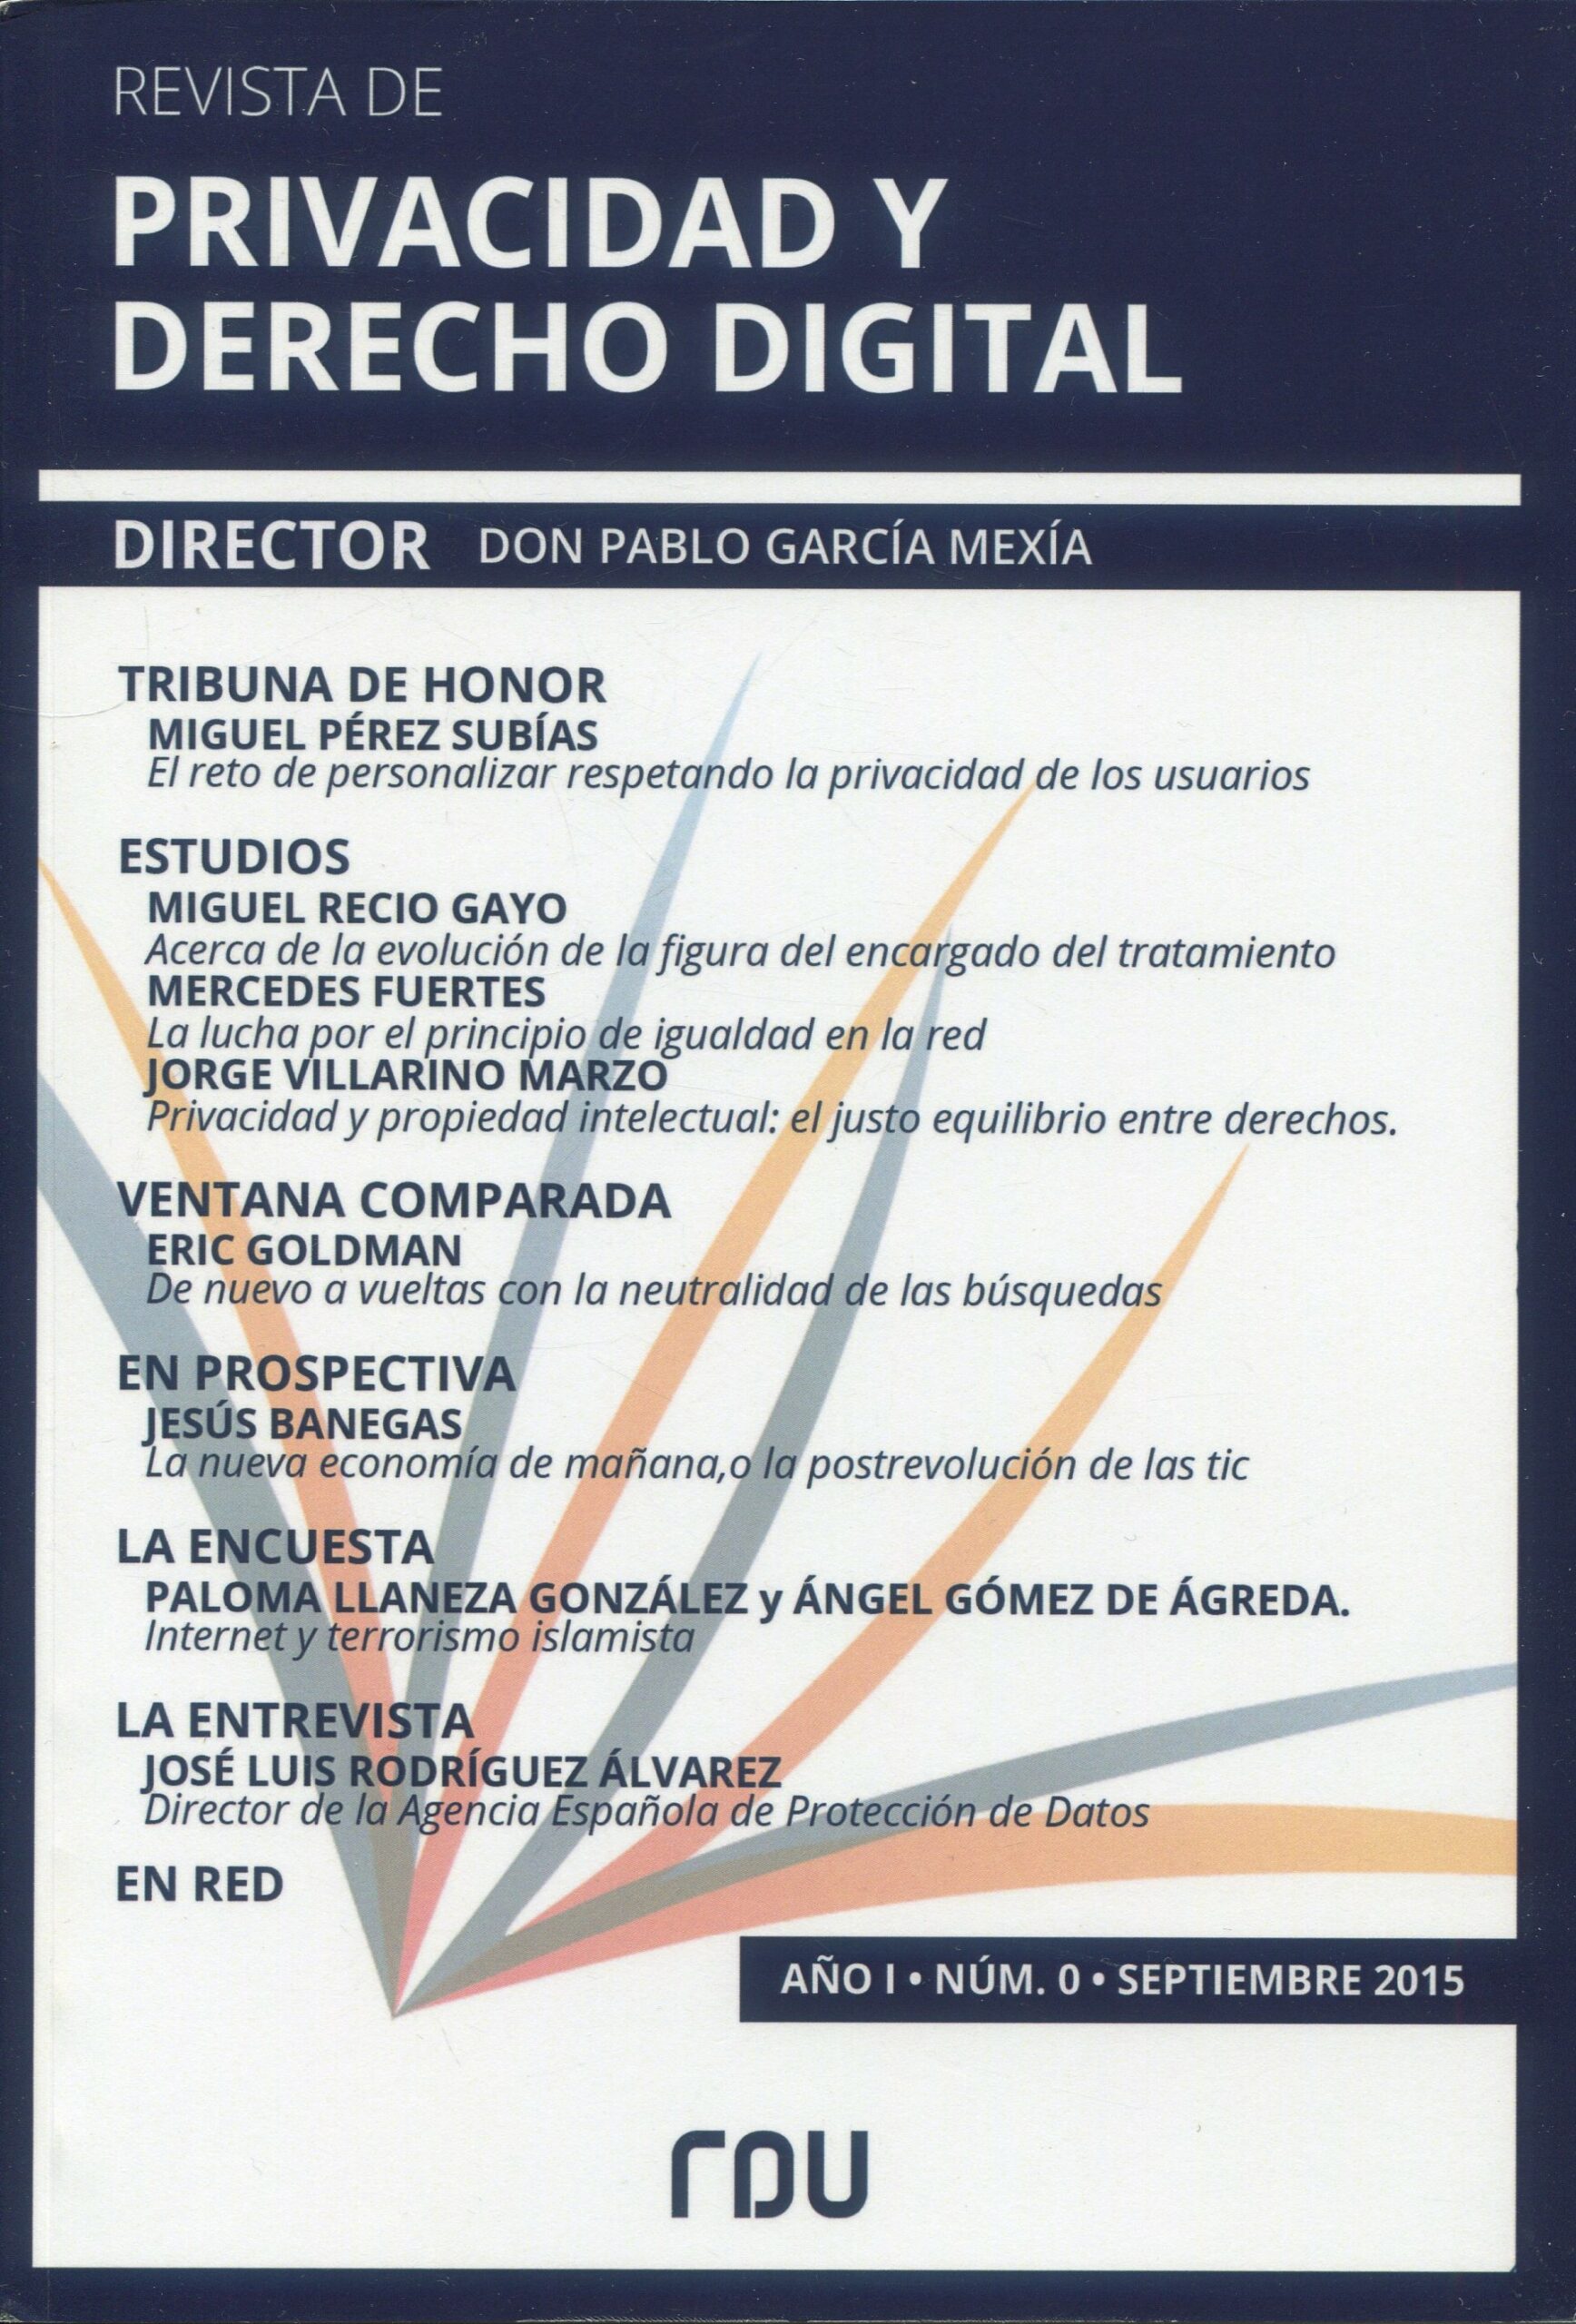 Revista de Privacidad y Derecho Digital Nº 0. Septiembre 2015